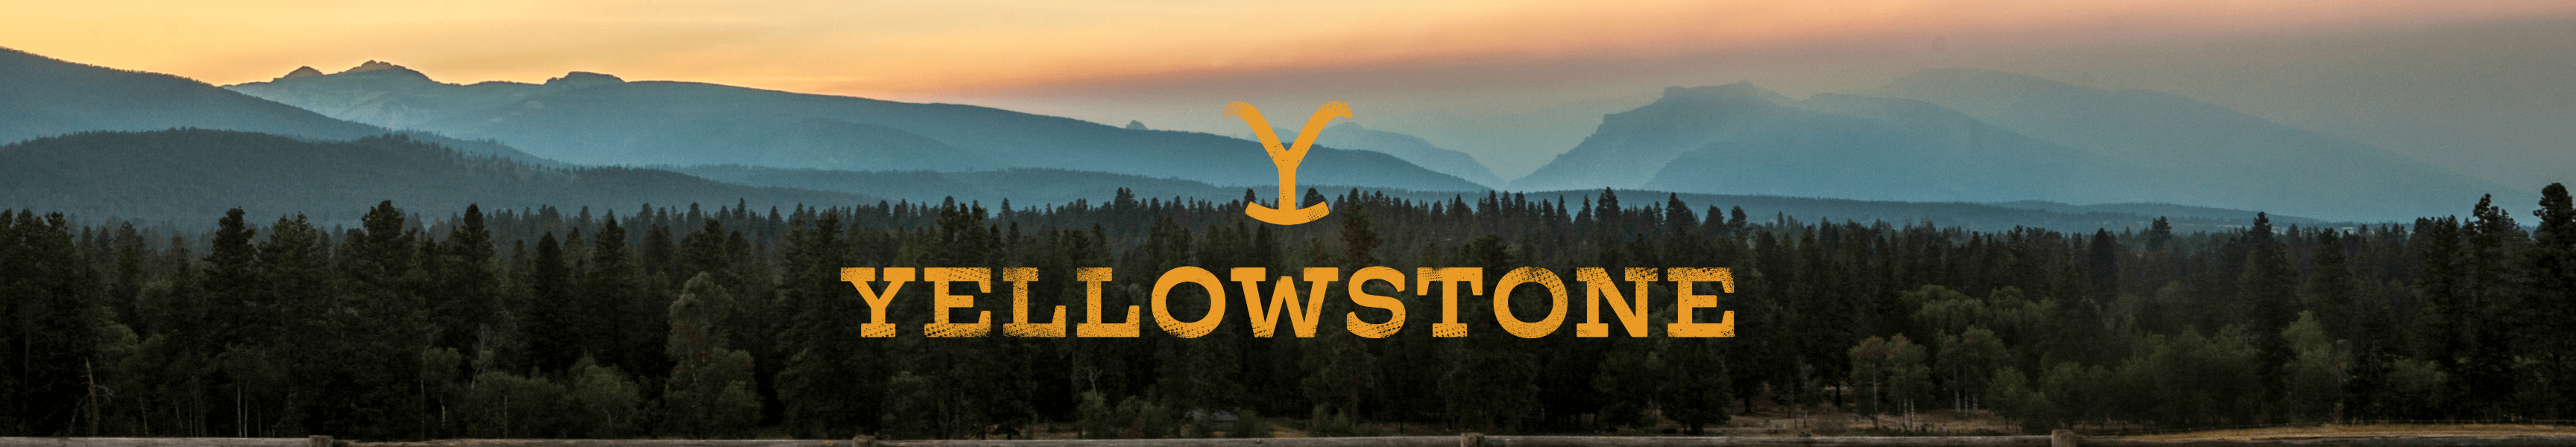 Adornos de Yellowstone